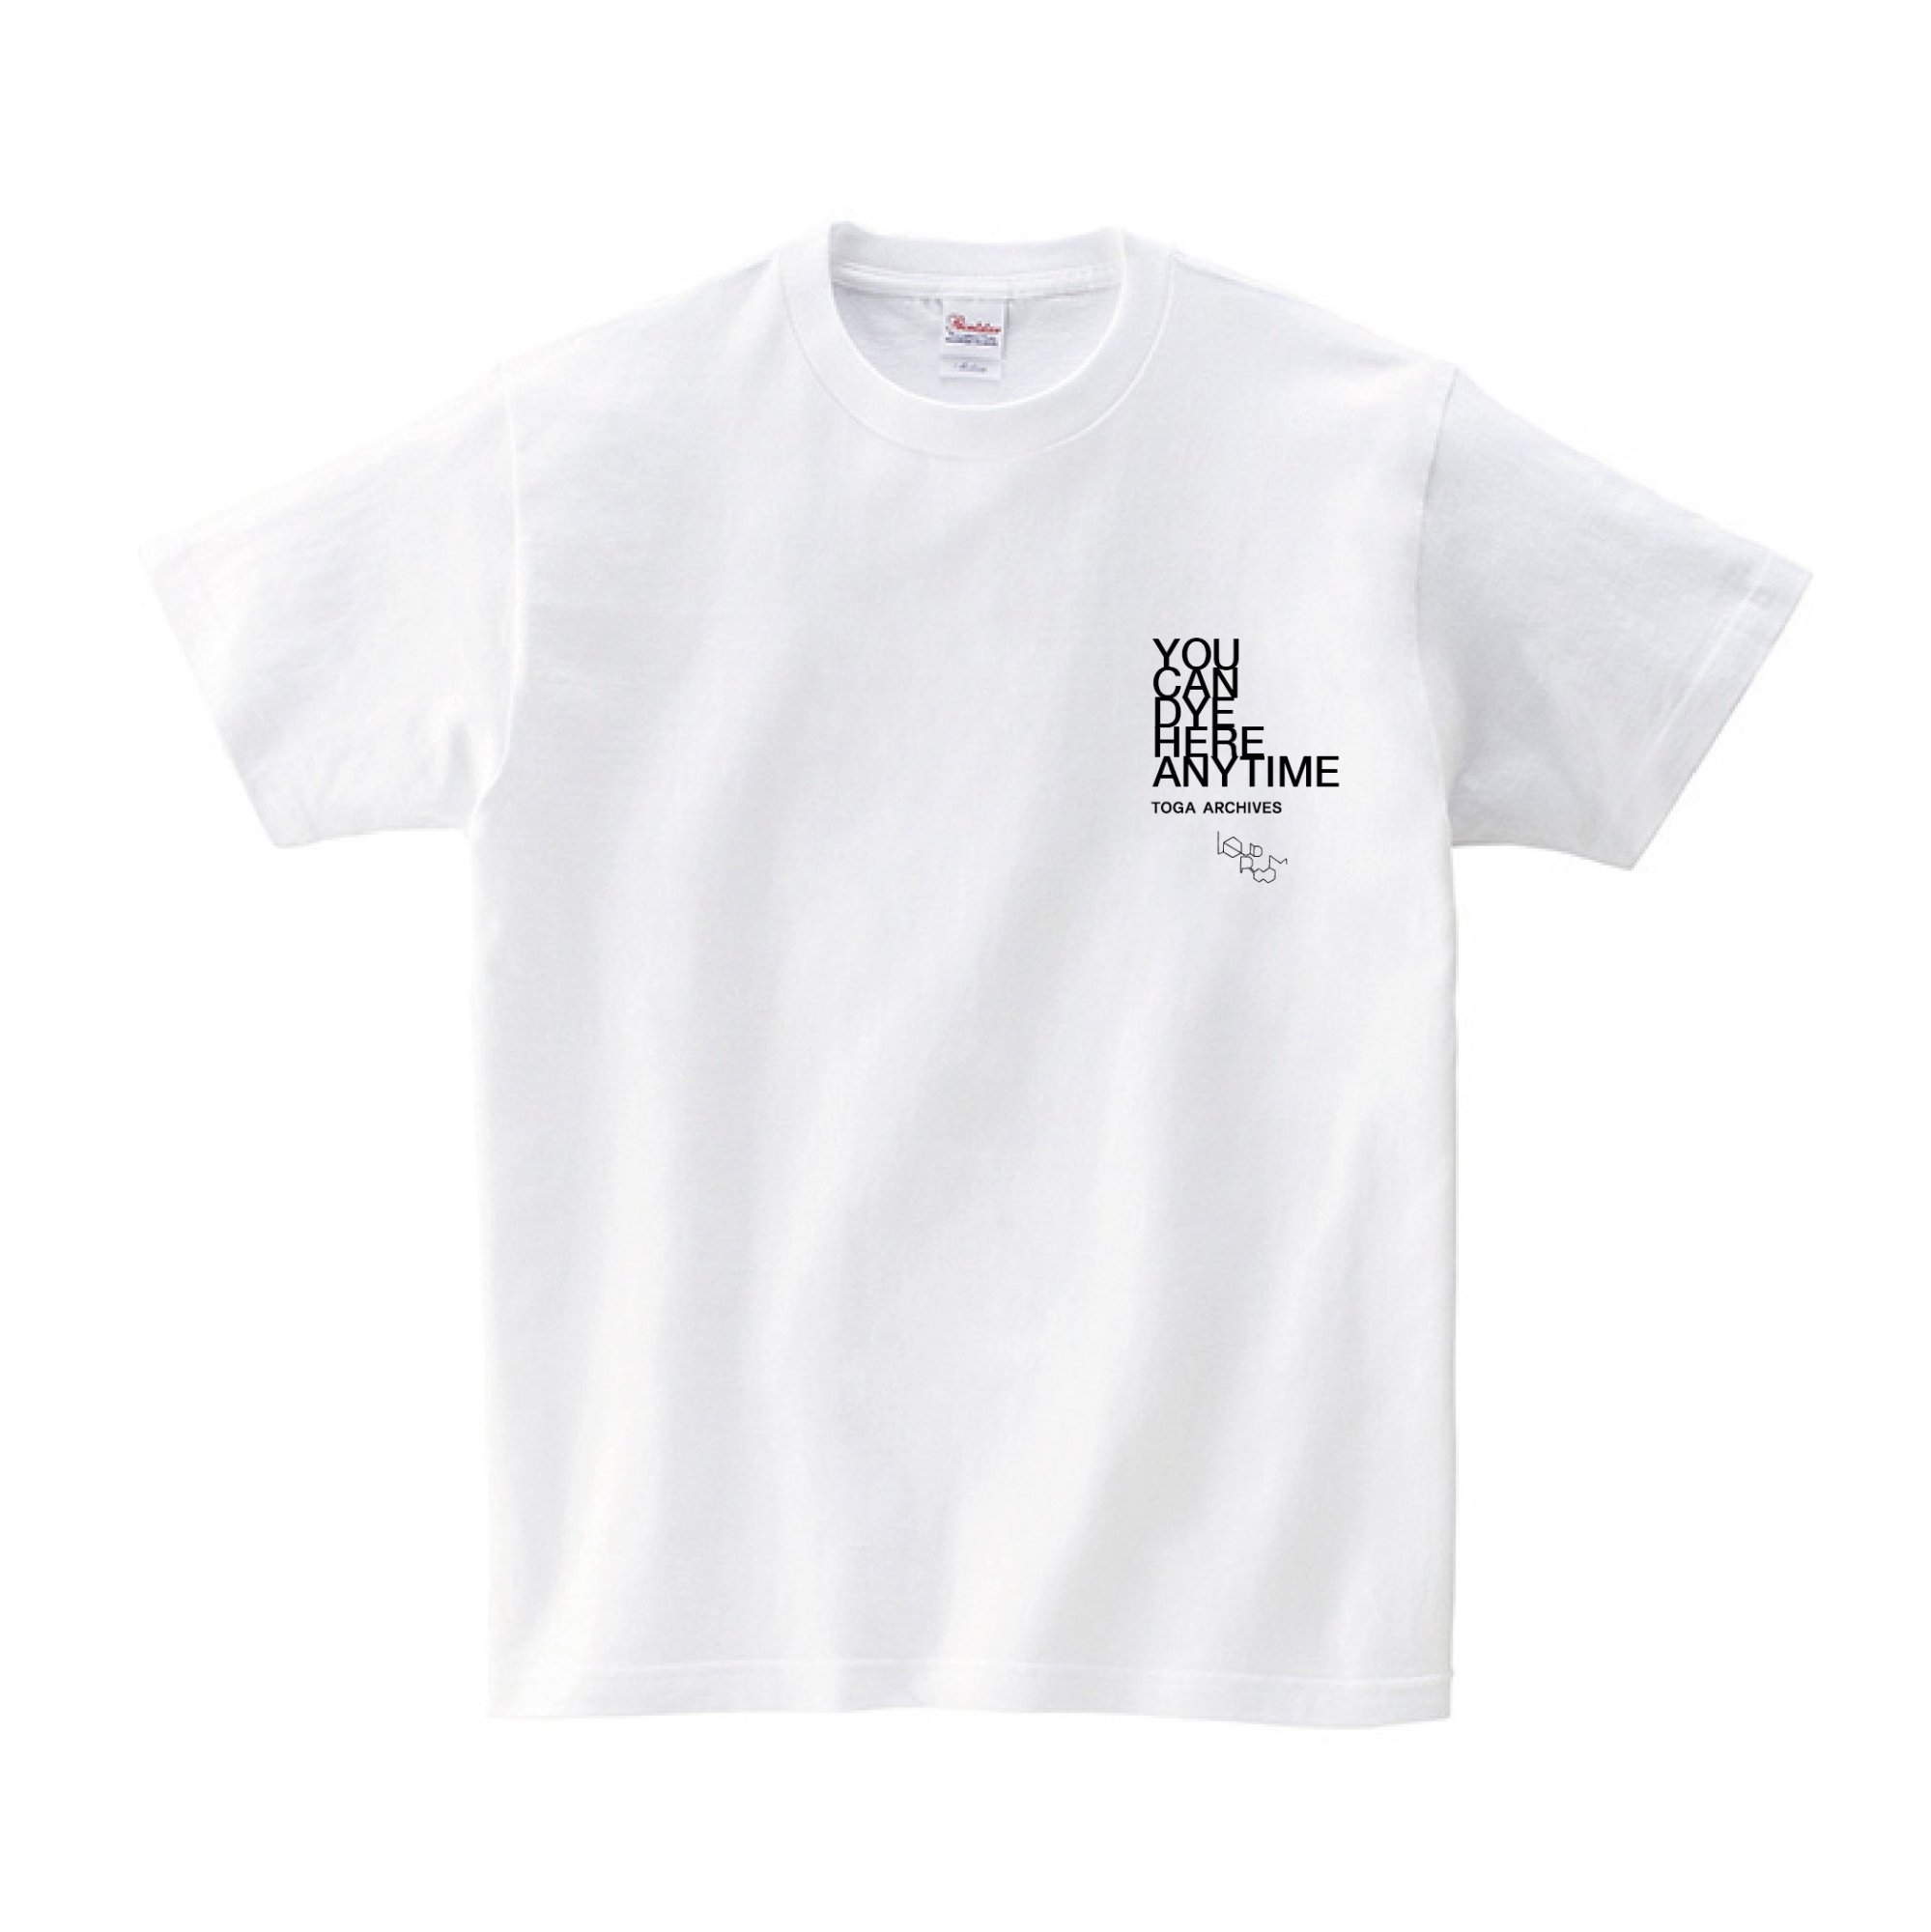 LIQUIDROOM x TOGA ARCHIVES　 T-shirts - LIQUIDROOM ONLINE STORE